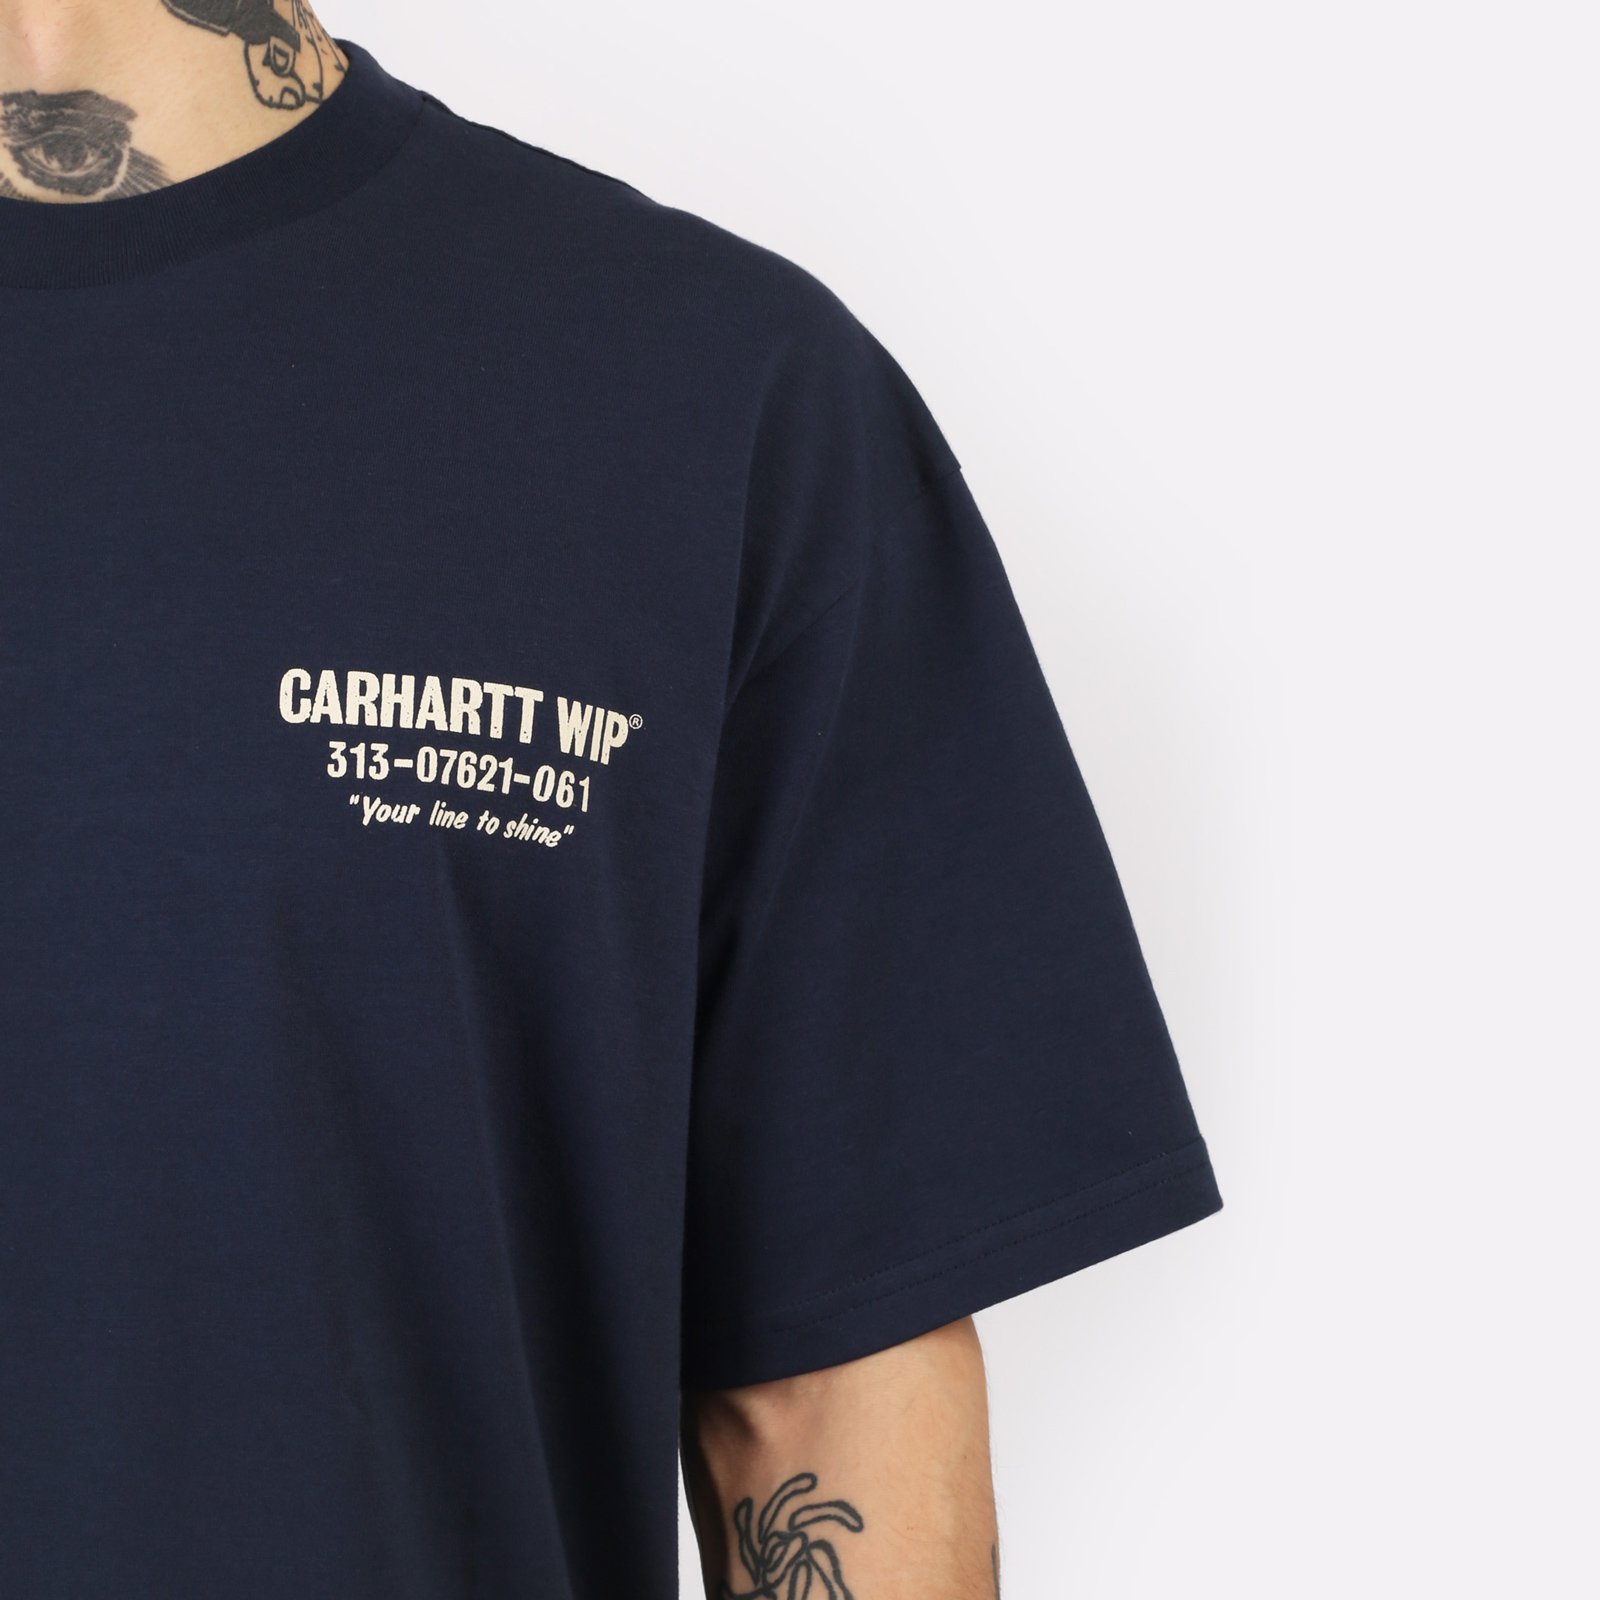 мужская синяя футболка Carhartt WIP S/S Less Troubles T-Shirt I033187-blue/wax - цена, описание, фото 5